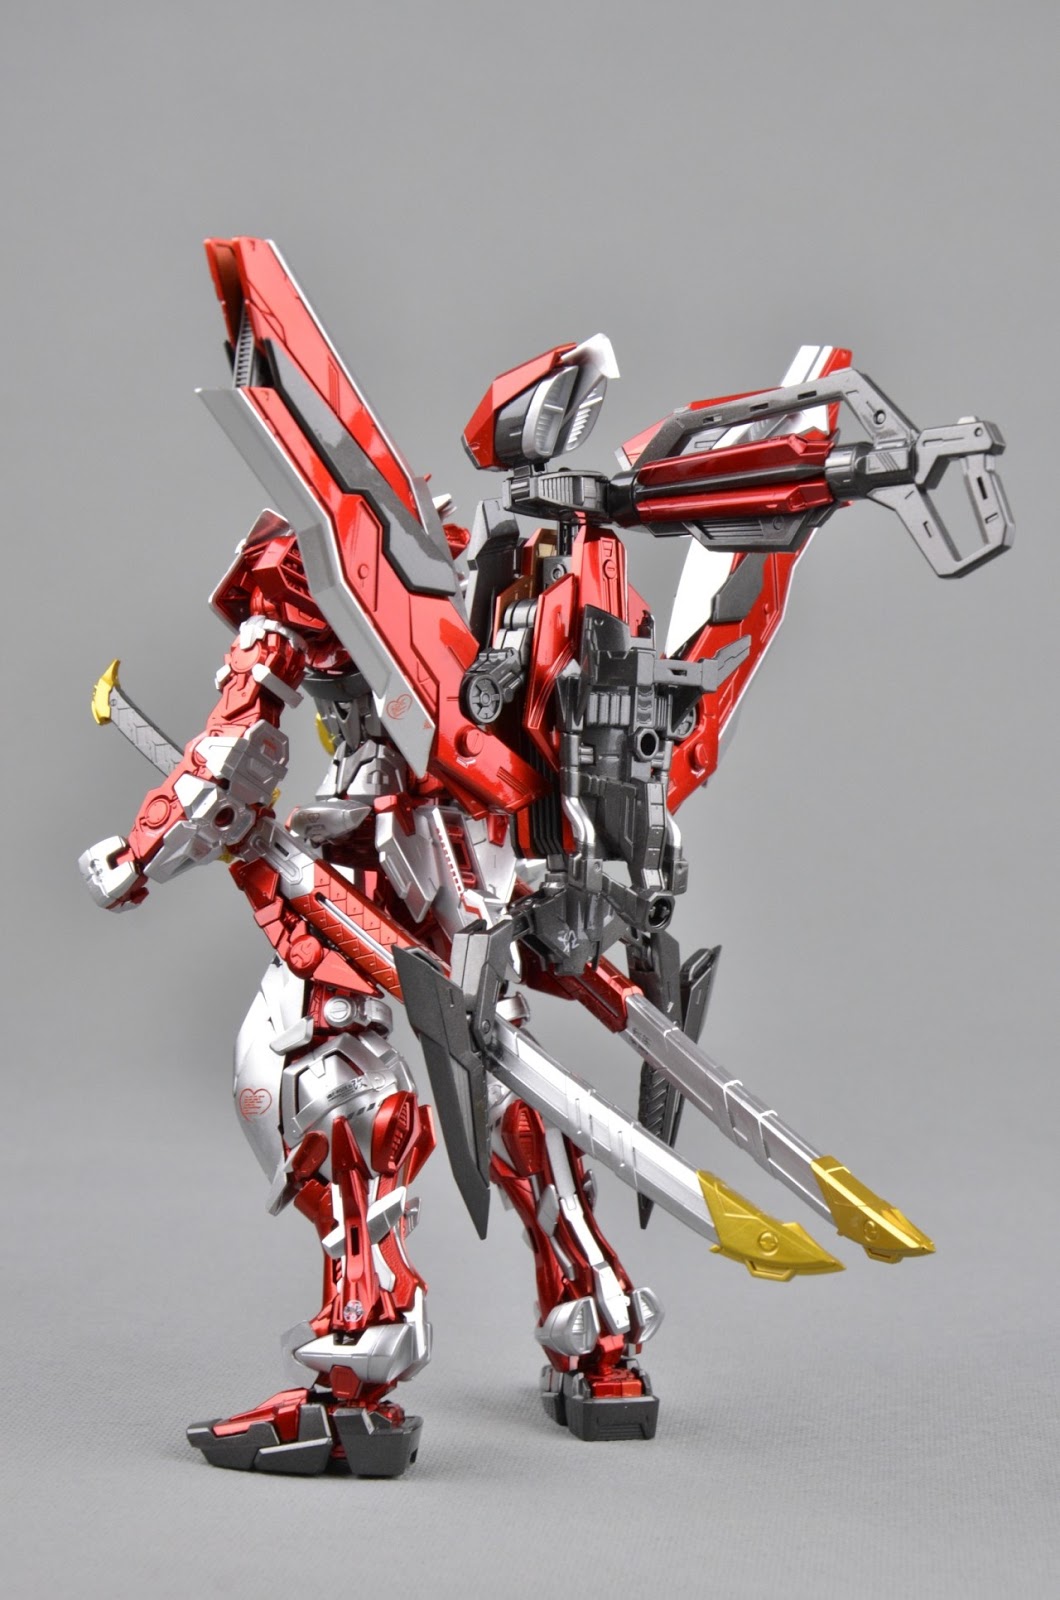 GUNDAM GUY: MG 1/100 Gundam Astray Red Frame - Metallic Painted Build